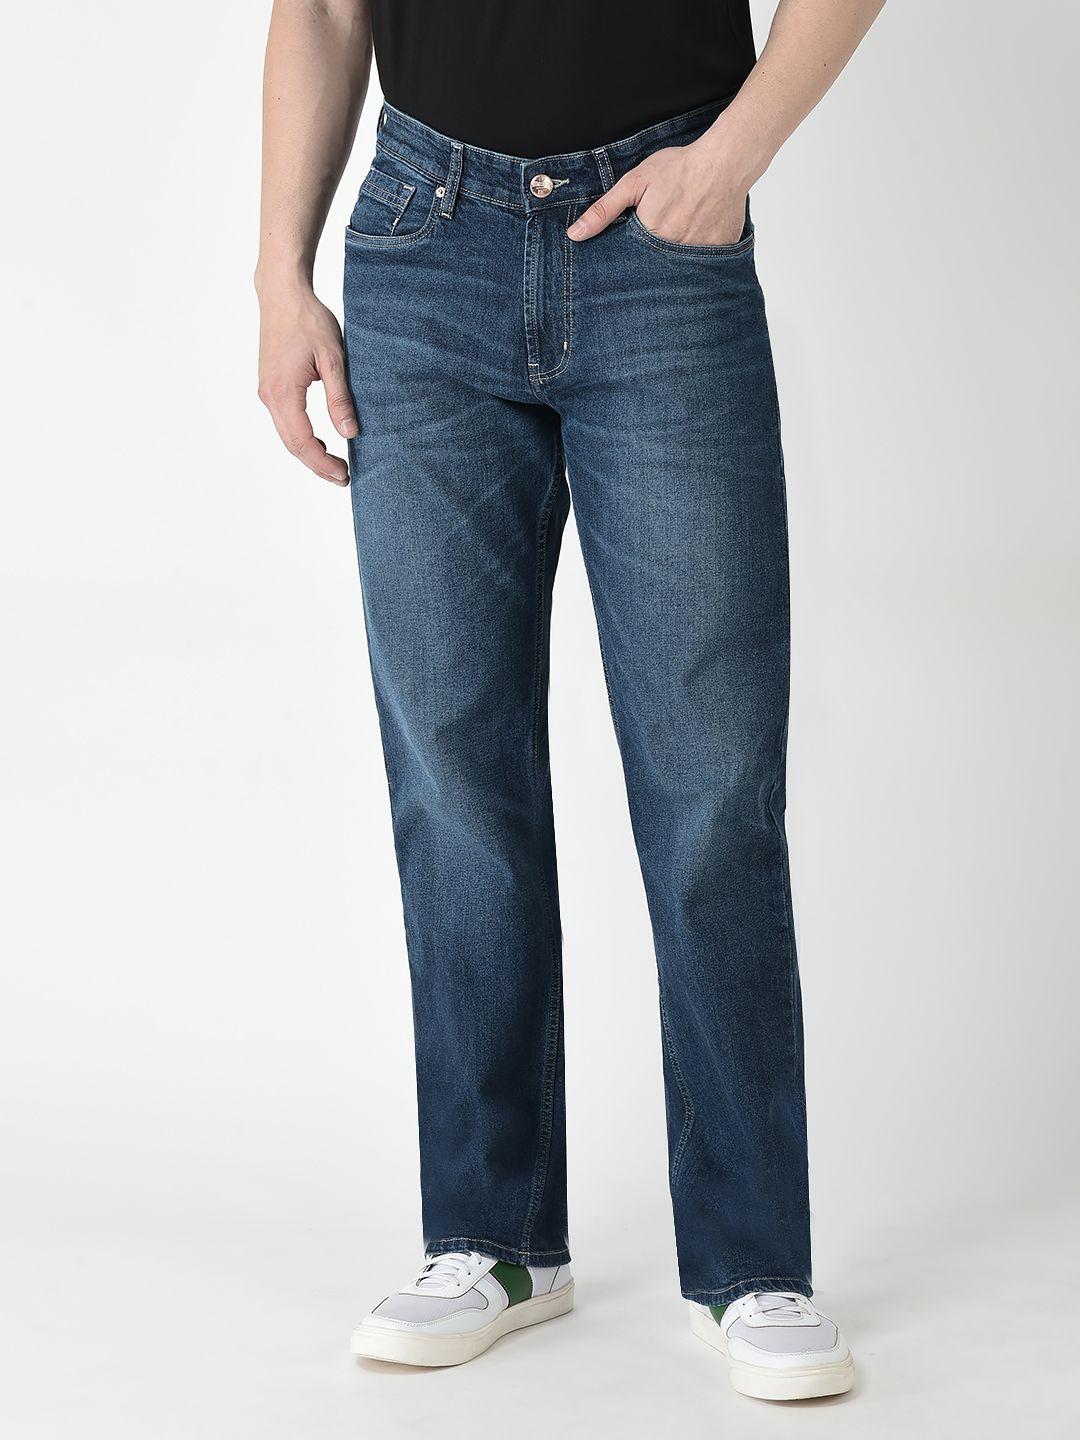 Buy Men's Regular Fit Jeans Online | Numero Uno